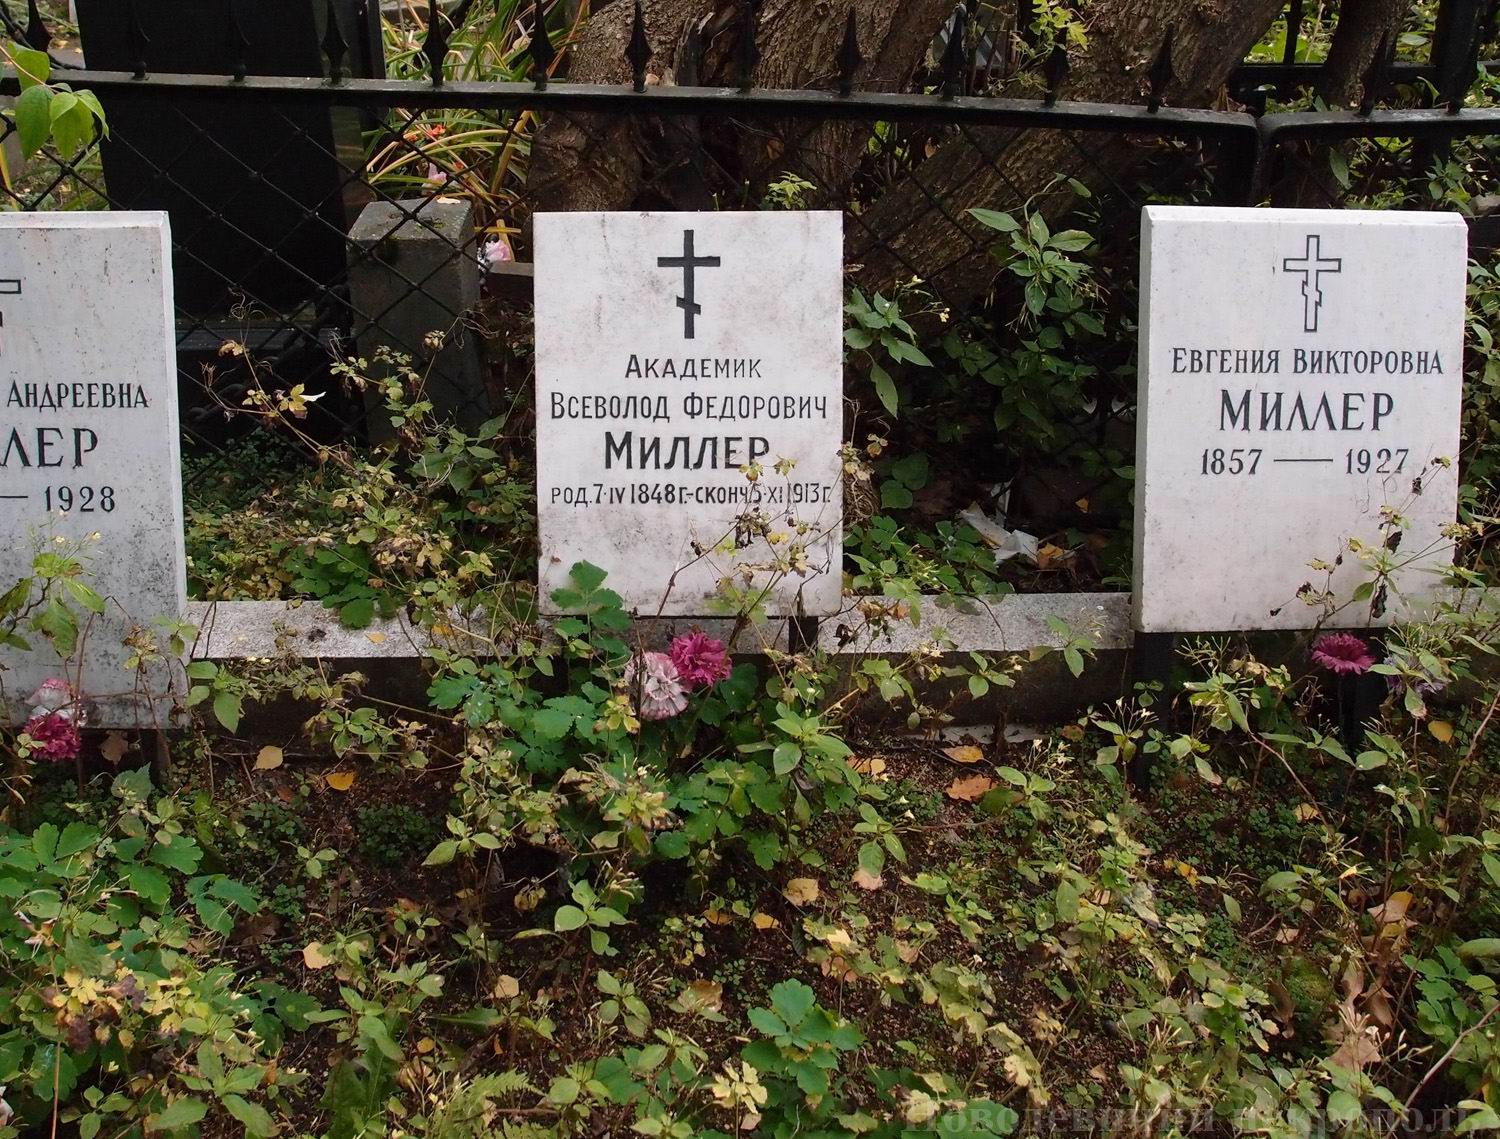 Плита на могиле Миллера В.Ф. (1848-1913), на Новодевичьем кладбище (3-13-6).